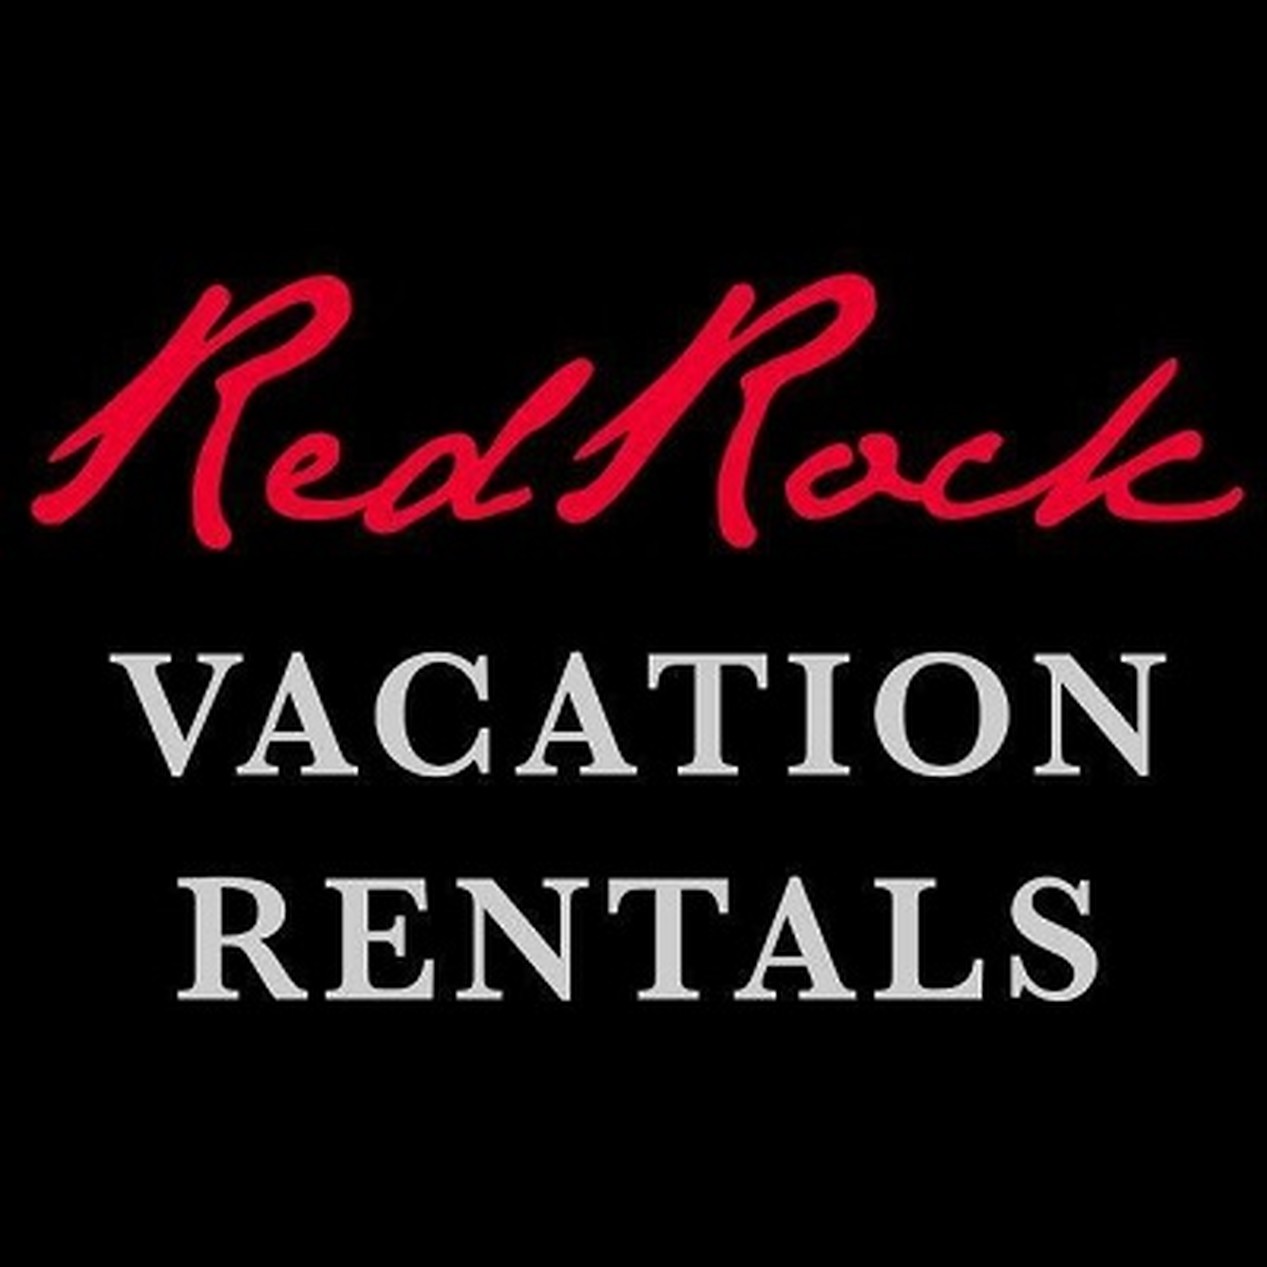 St. George Utah Vacation Rentals